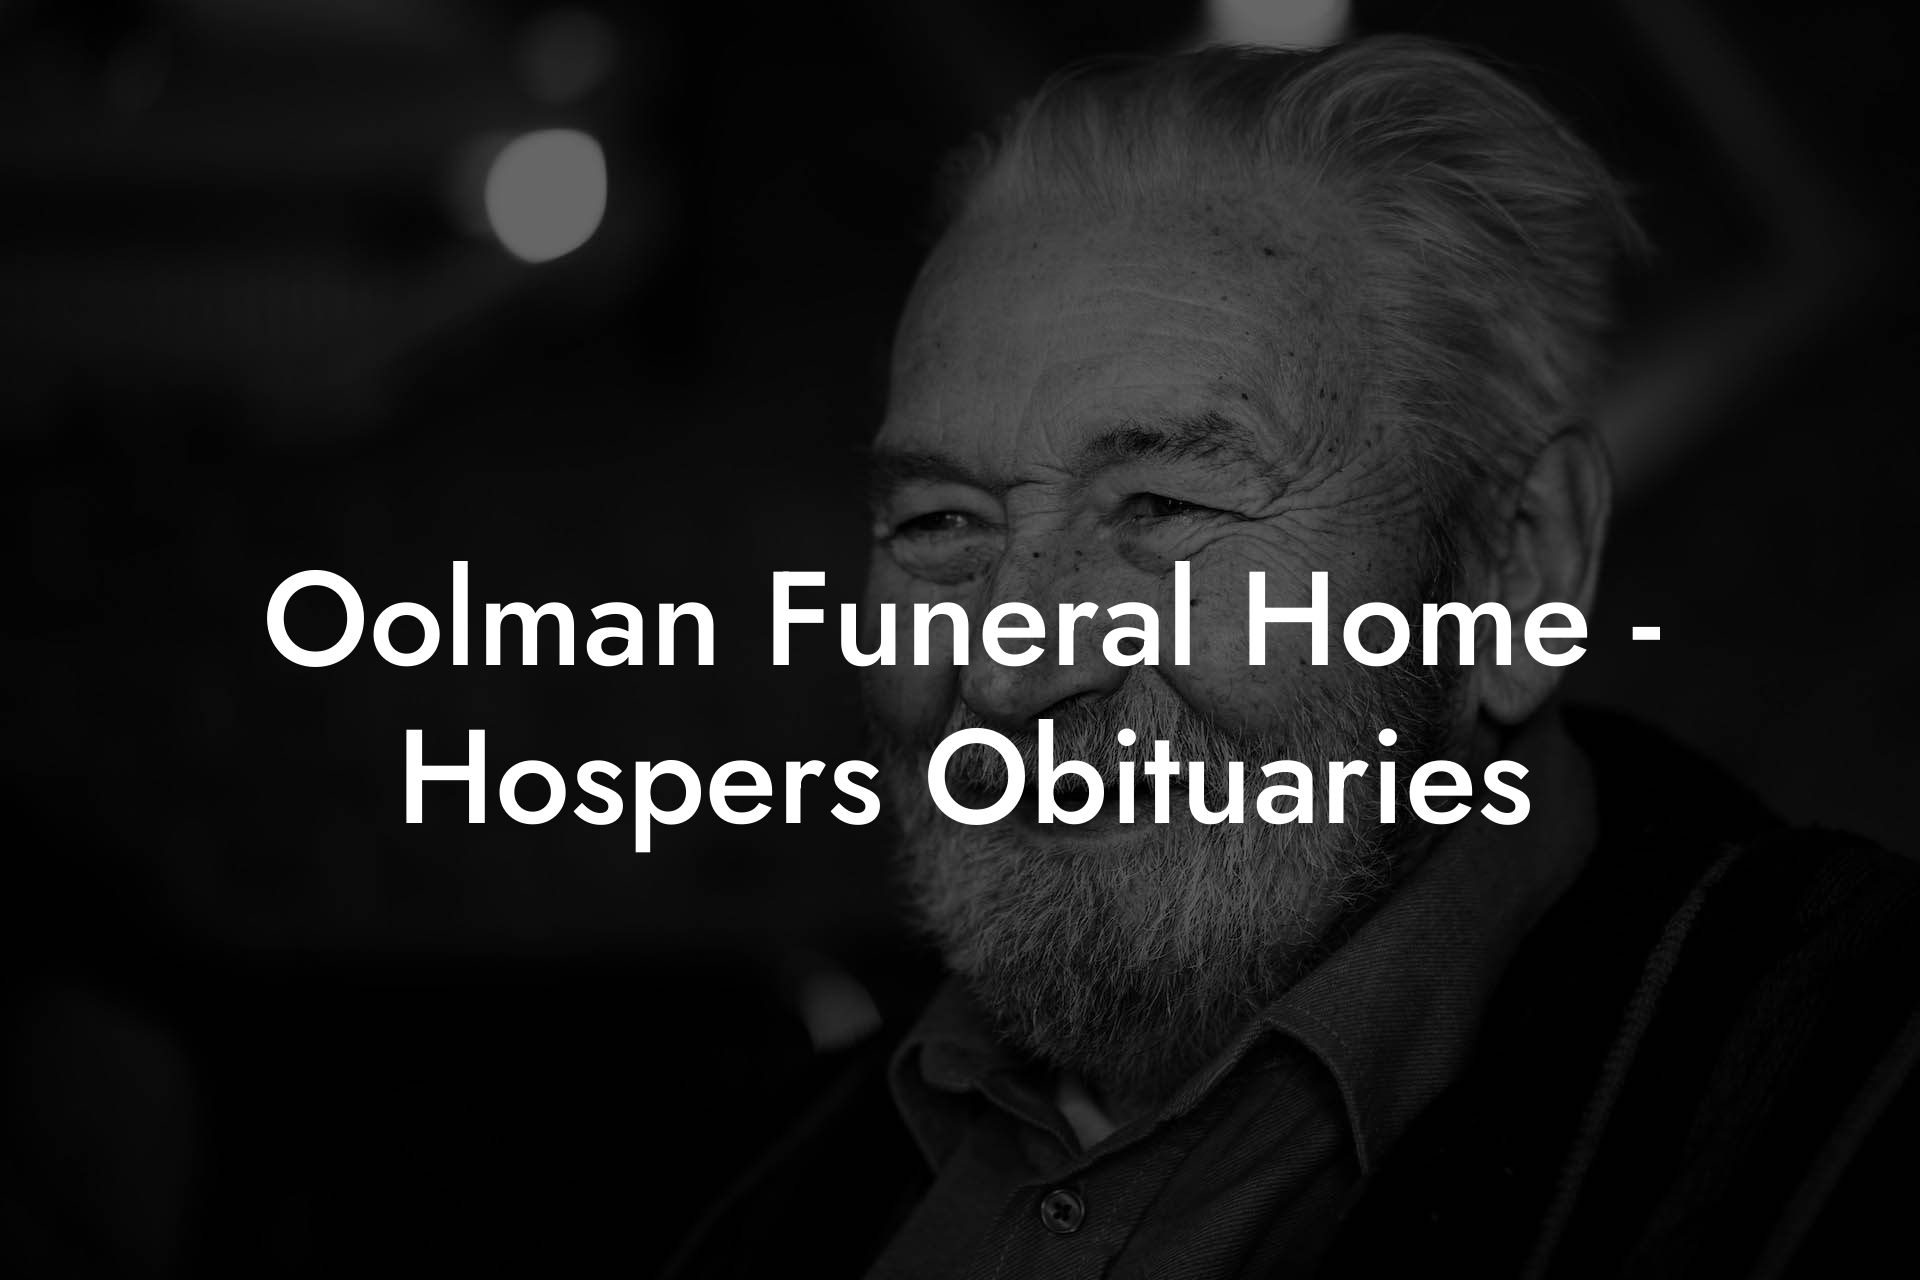 Oolman Funeral Home - Hospers Obituaries